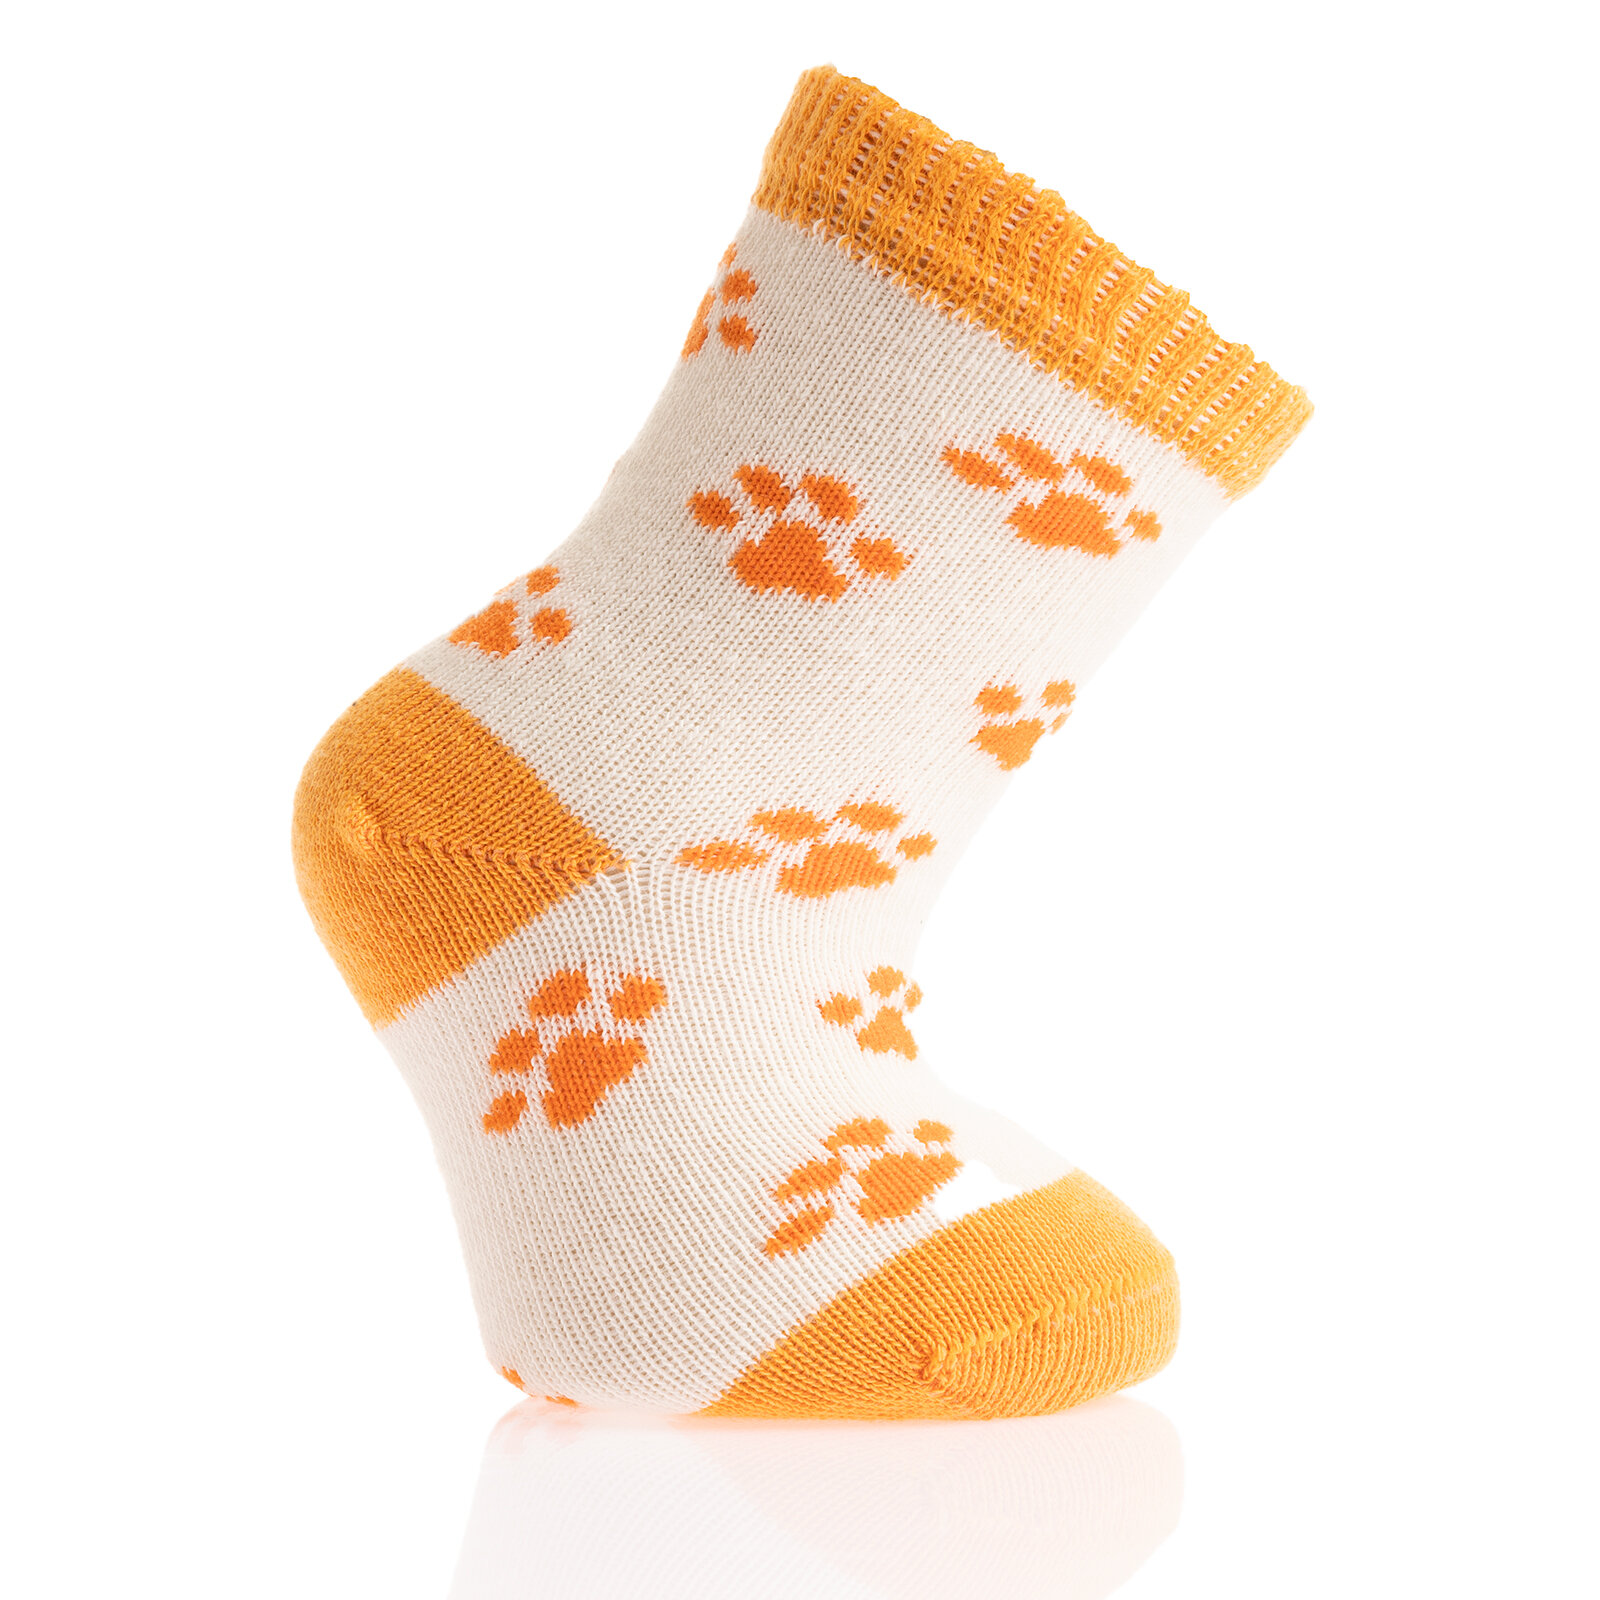 Bolero Desenli 3lü Soket Çorap Erkek Bebek